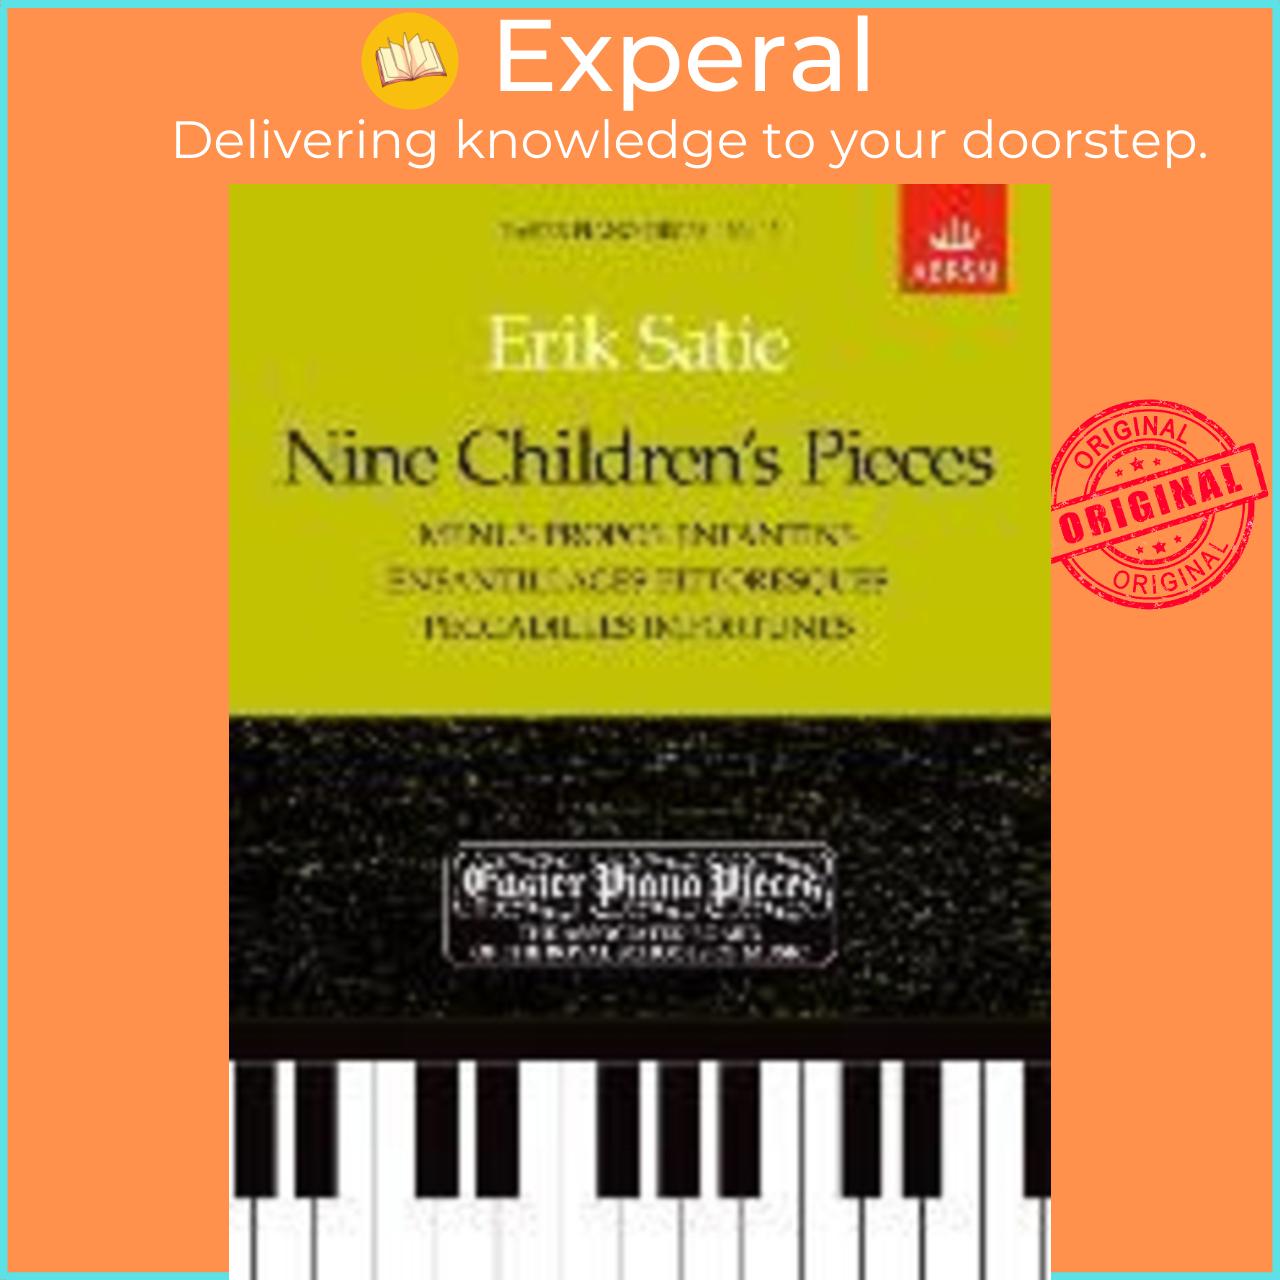 Sách - Nine Children's Pieces (Menus Propos Enfantins, Enfantillages Pittoresques, by Erik Satie (UK edition, paperback)